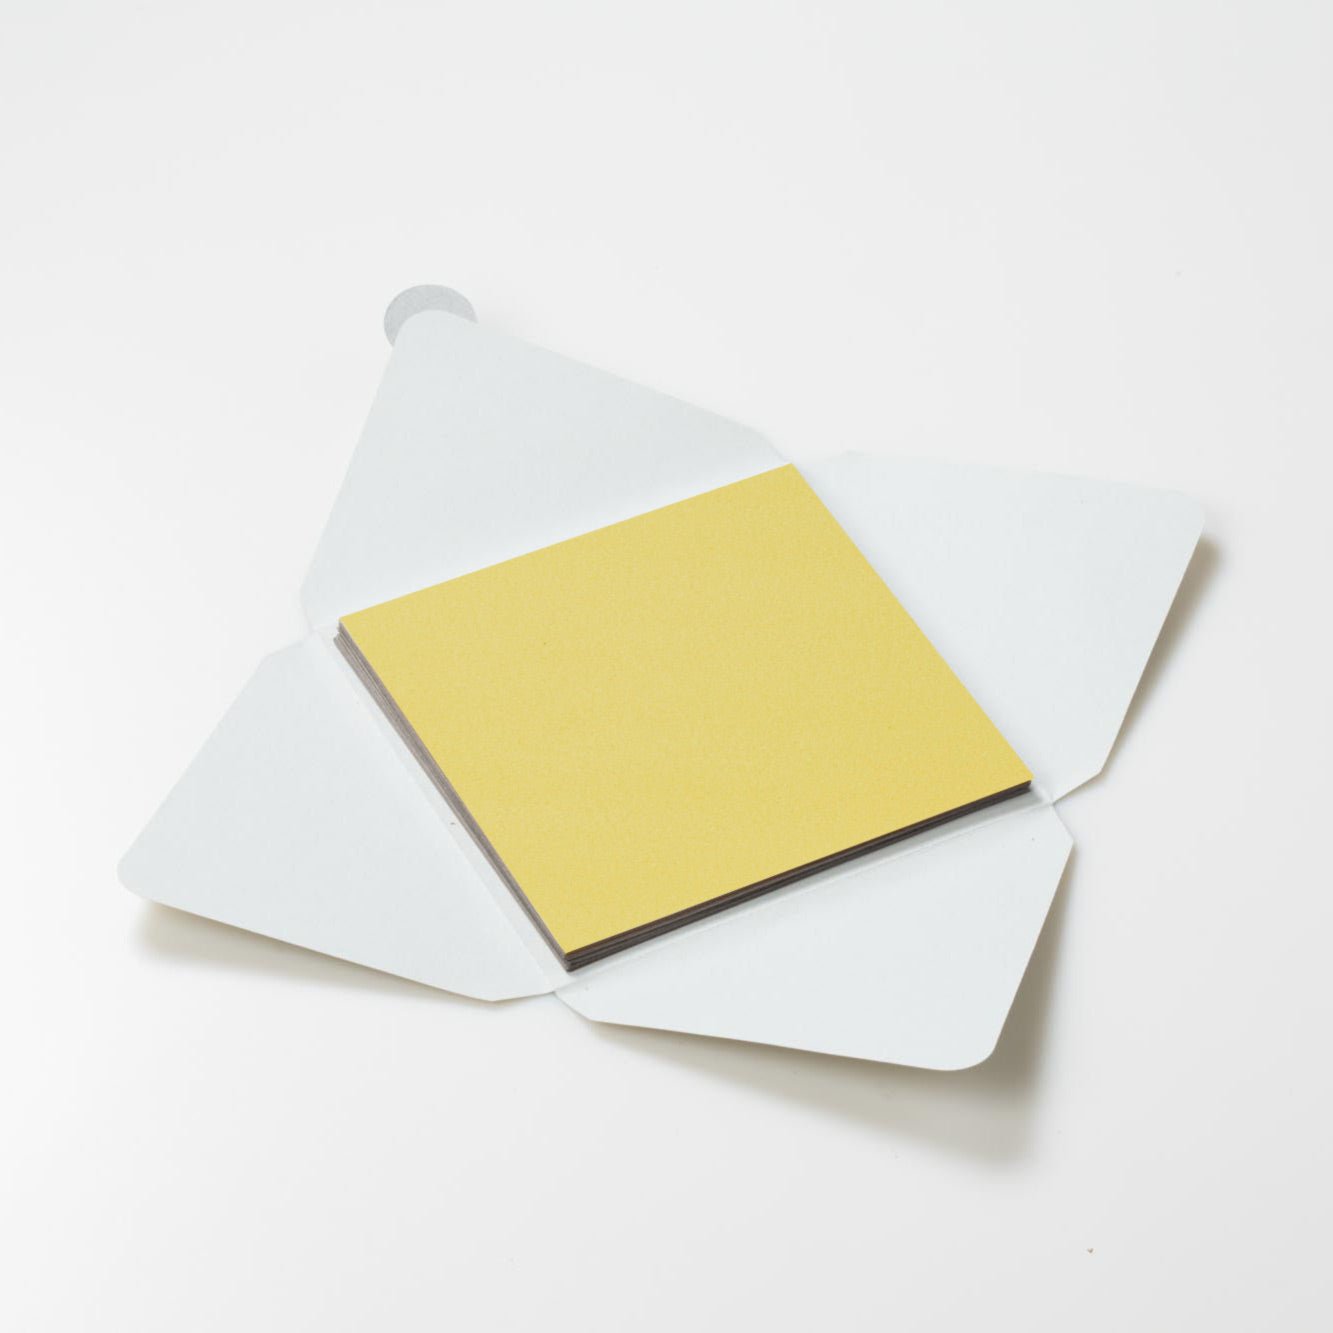 Kit di fogli "Velluto Giallo" formato origami 15 cm x 15 cm - Manamant Paper Tales -FG2205800M2D